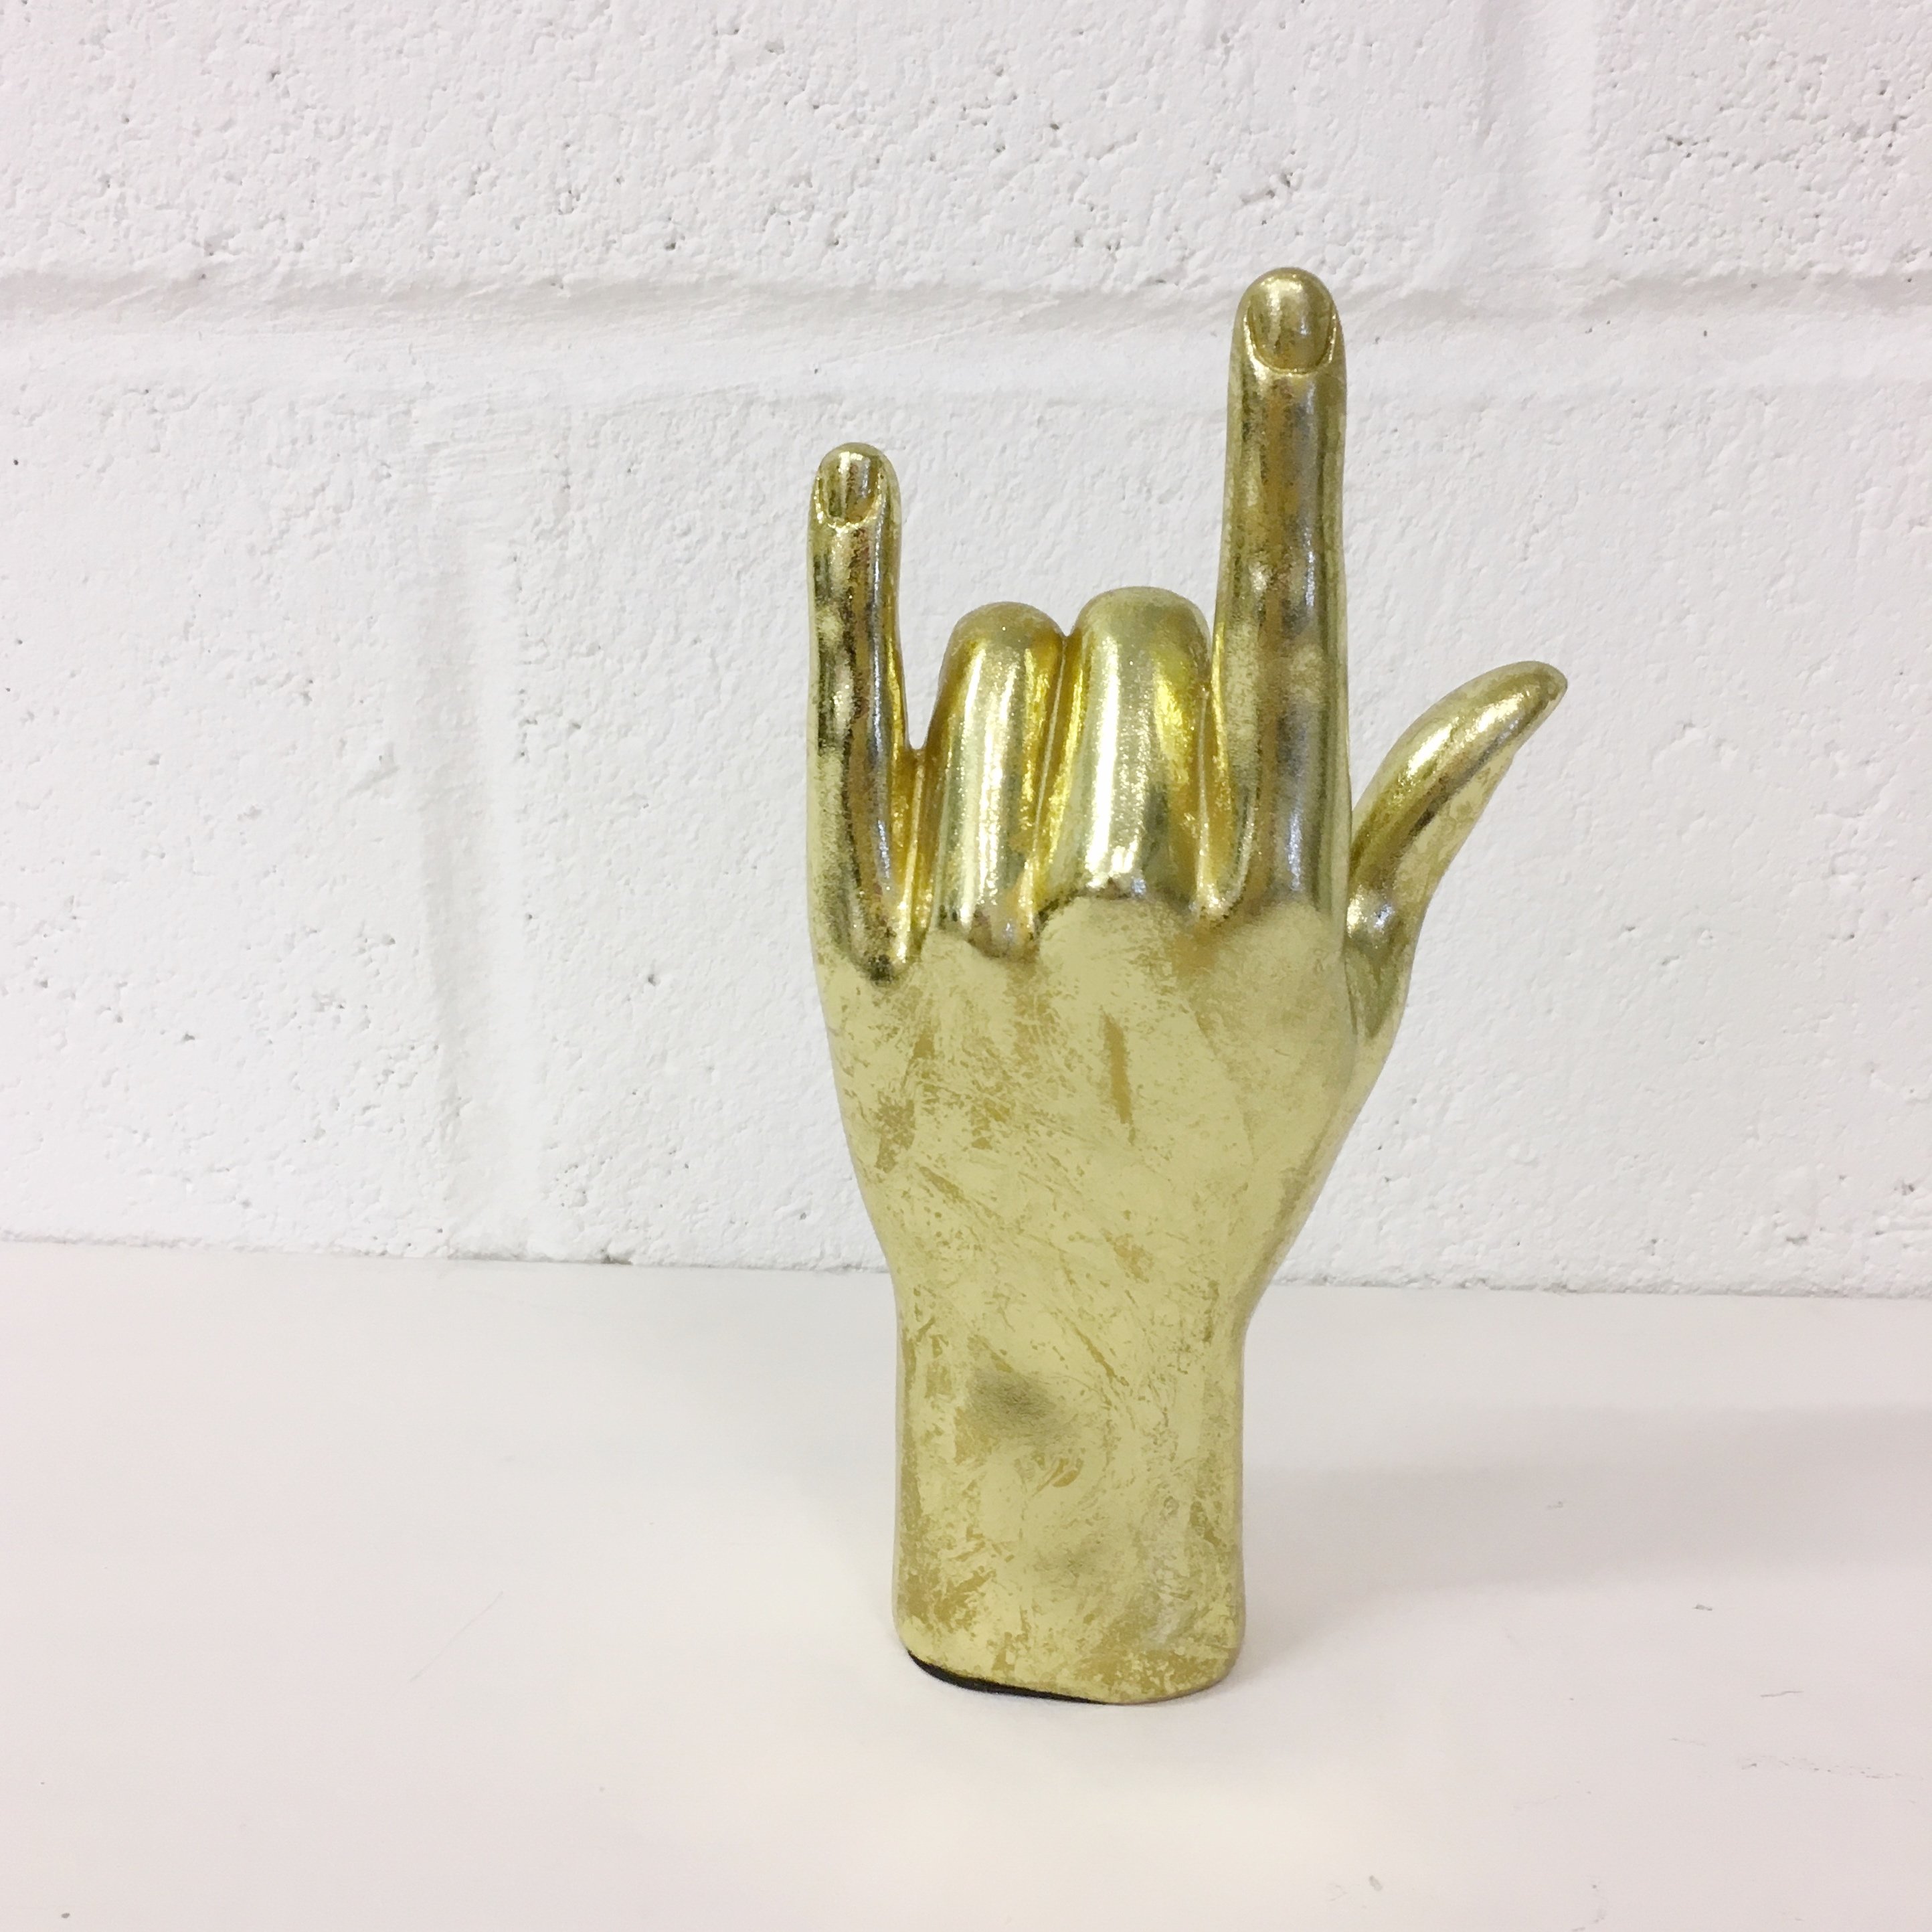 Gold Rock On Hand Figure - The Joyful Home Company